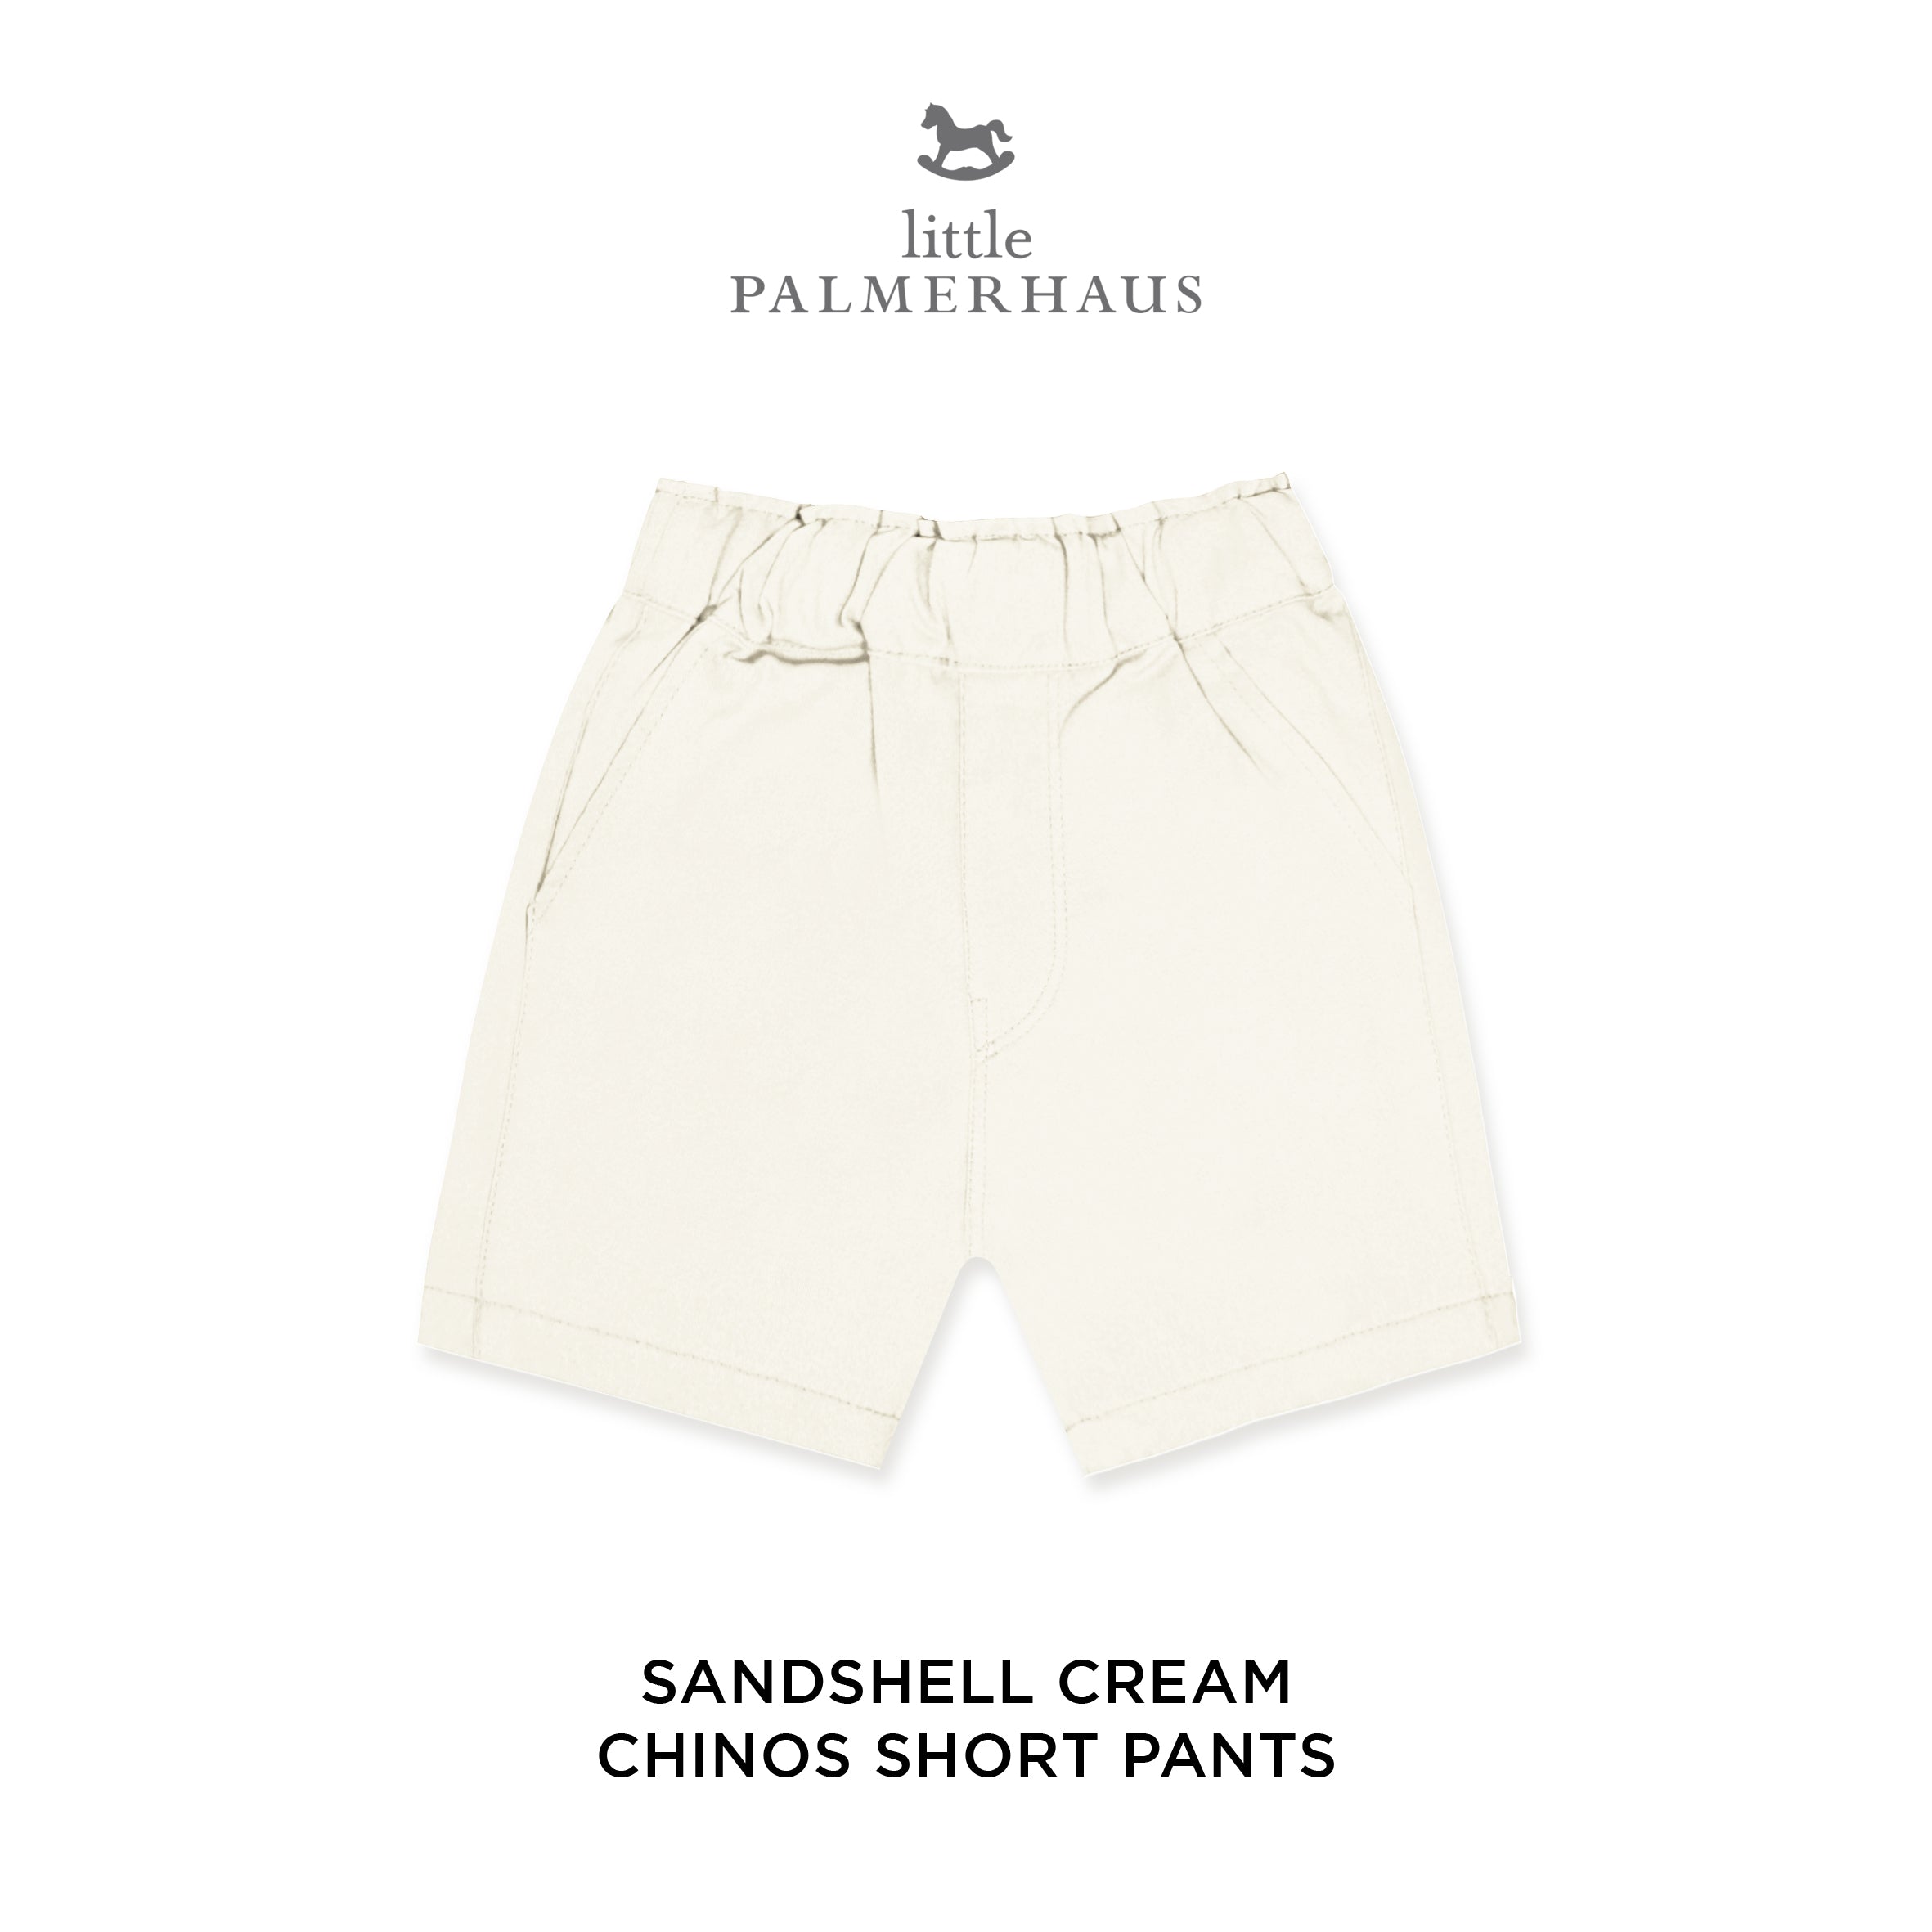 Chinos Short Pants 7.0